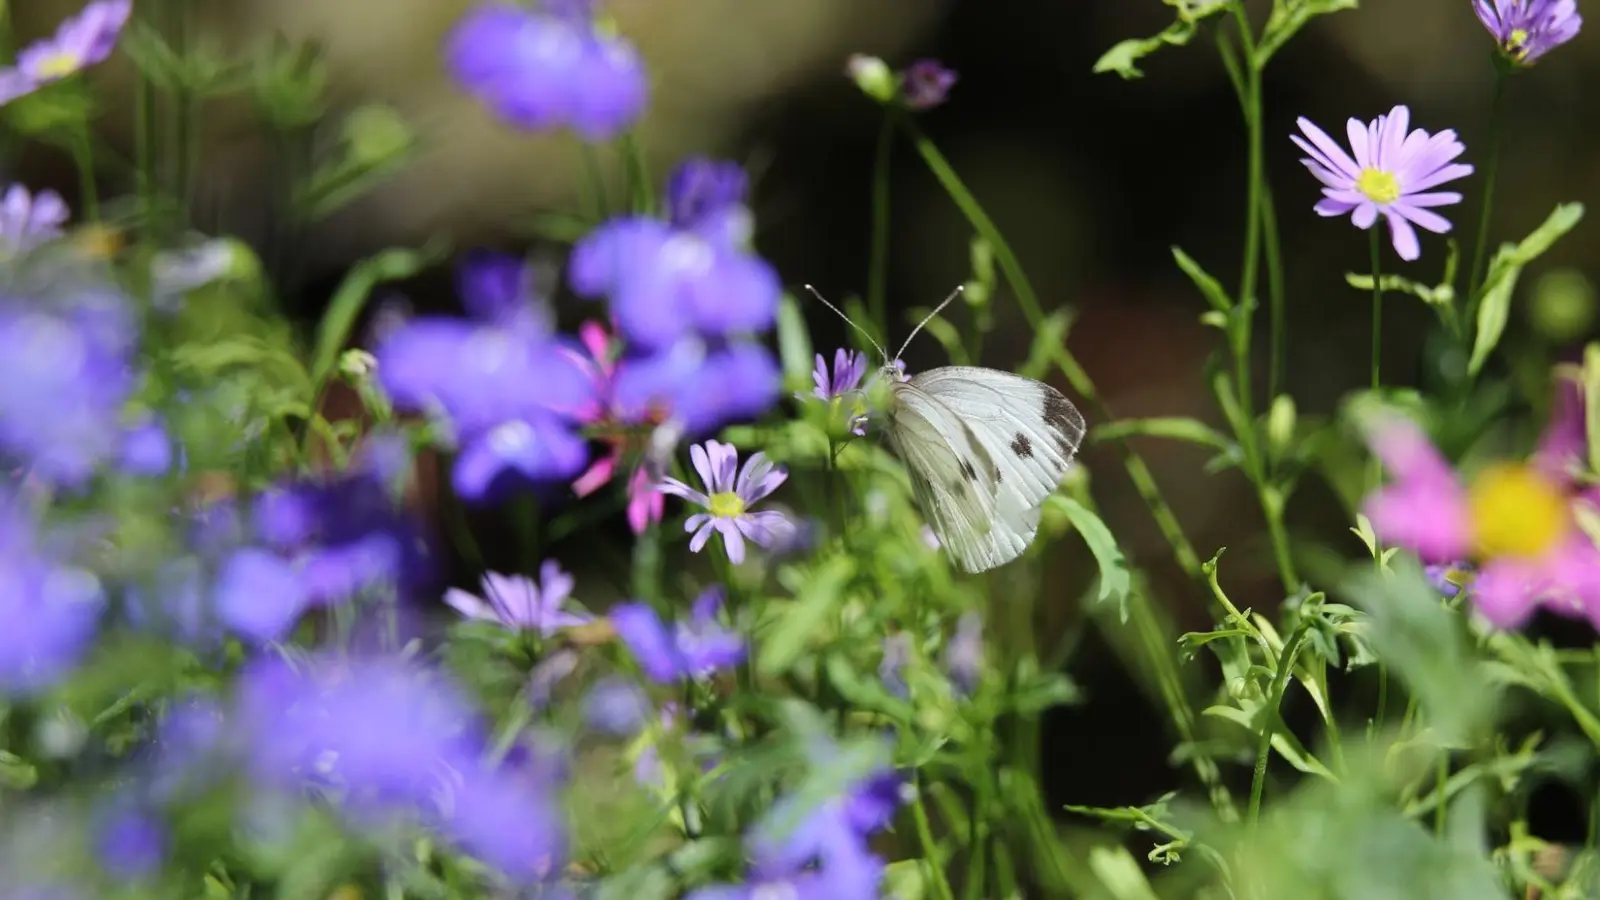 Sieht schön aus und unterstützt die Artenvielfalt: Schmetterlinge kommen gern zu Besuch auf der Blumenwiese. (Foto: Karl-Josef Hildenbrand/dpa-tmn)